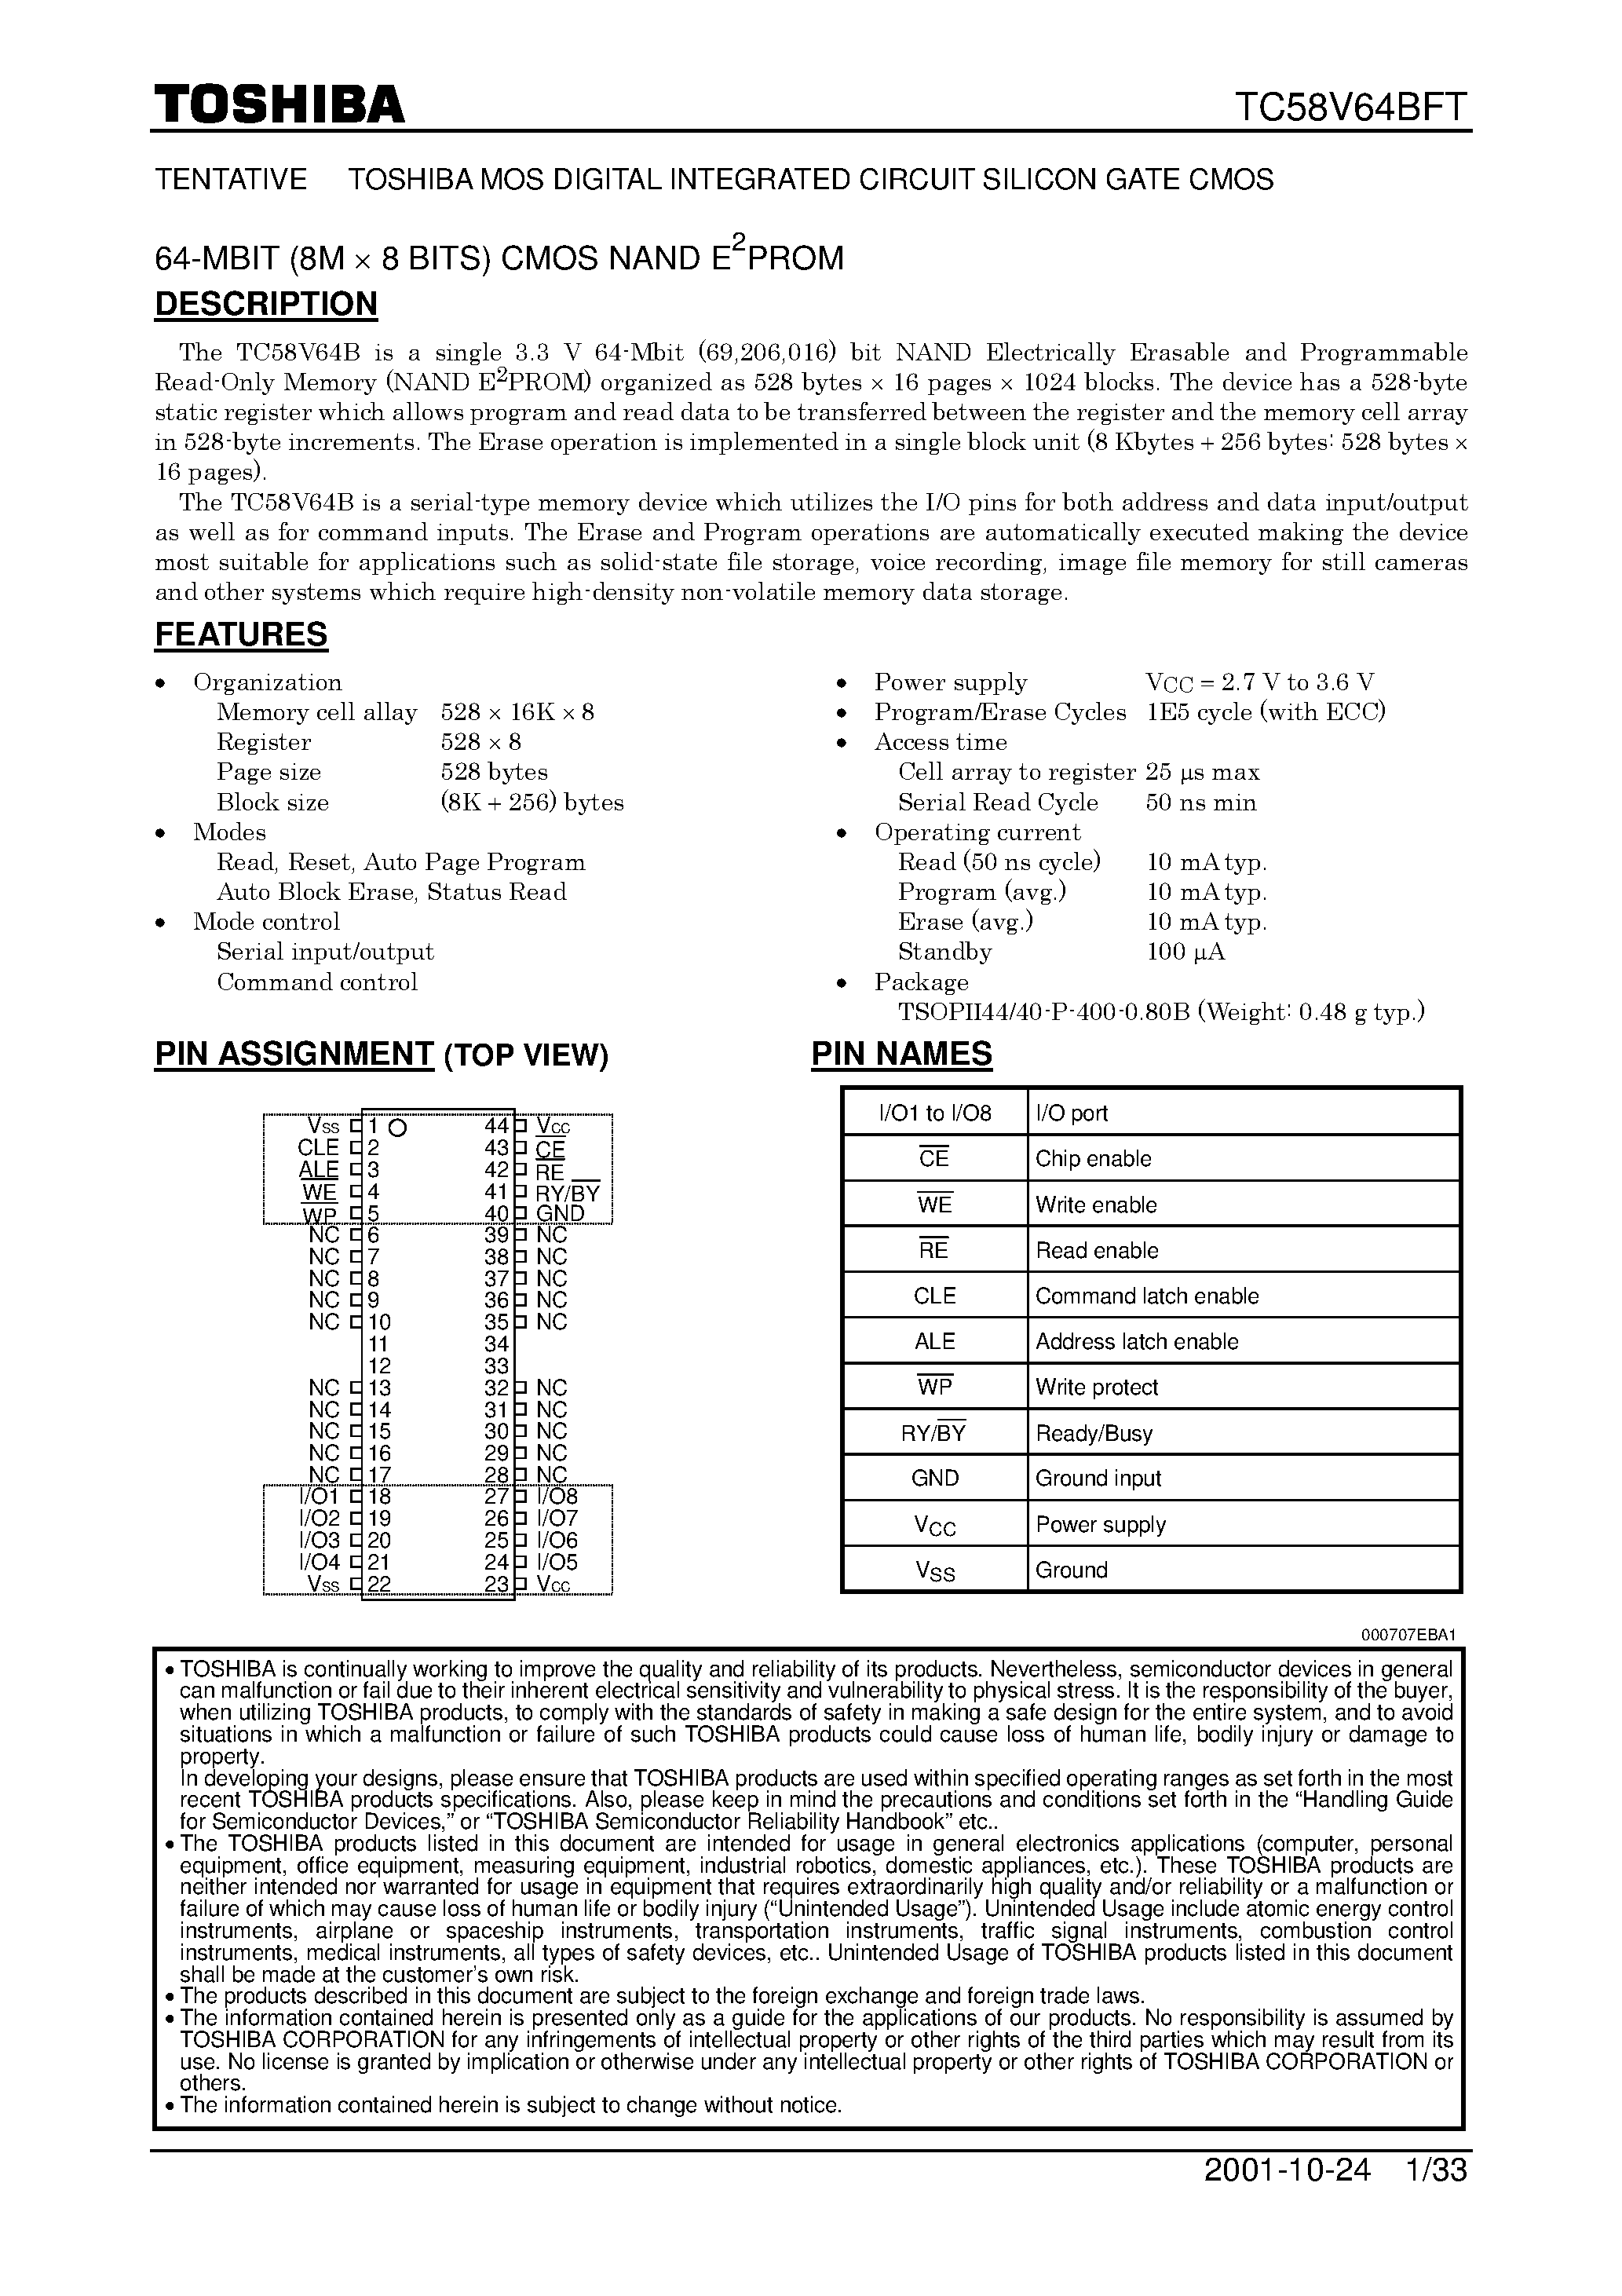 Даташит TC58V64BFT - 64M-Bit CMOS NAND EPROM страница 1